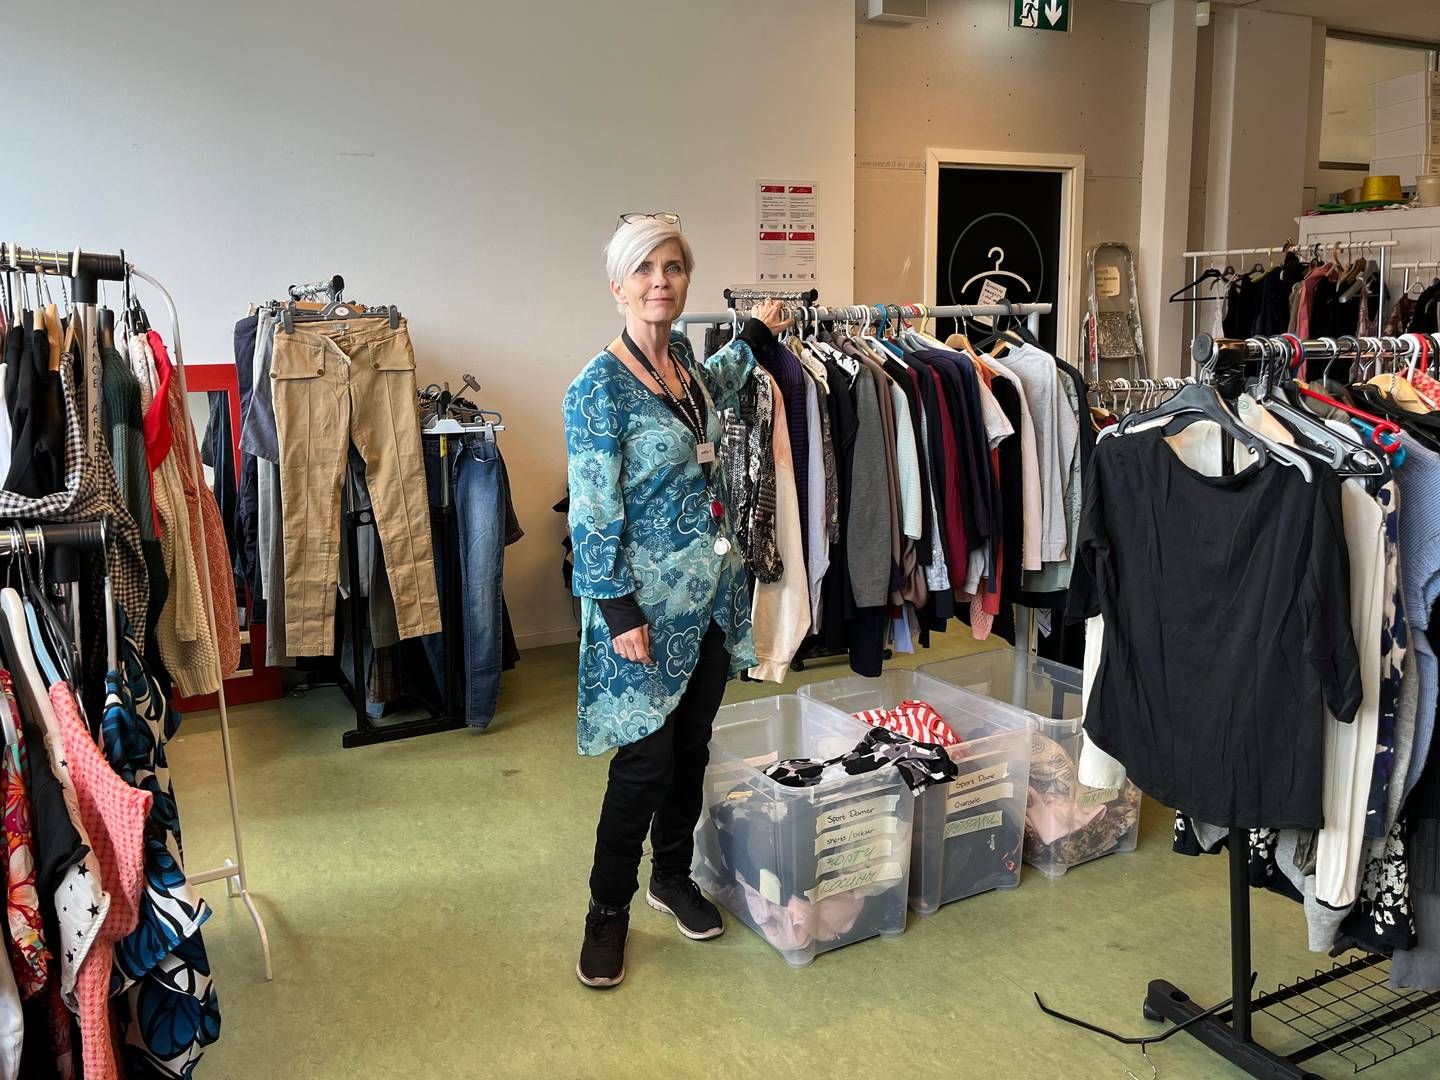 Dorthe Hornhaver i Bixen som giver donationer gratis videre til flygtninge. "Det er først og fremmest tøj til børn og voksne, elektronik, ting til boligen, bøger, personlig pleje, håndklæder og sengelinned." | Foto: Privat